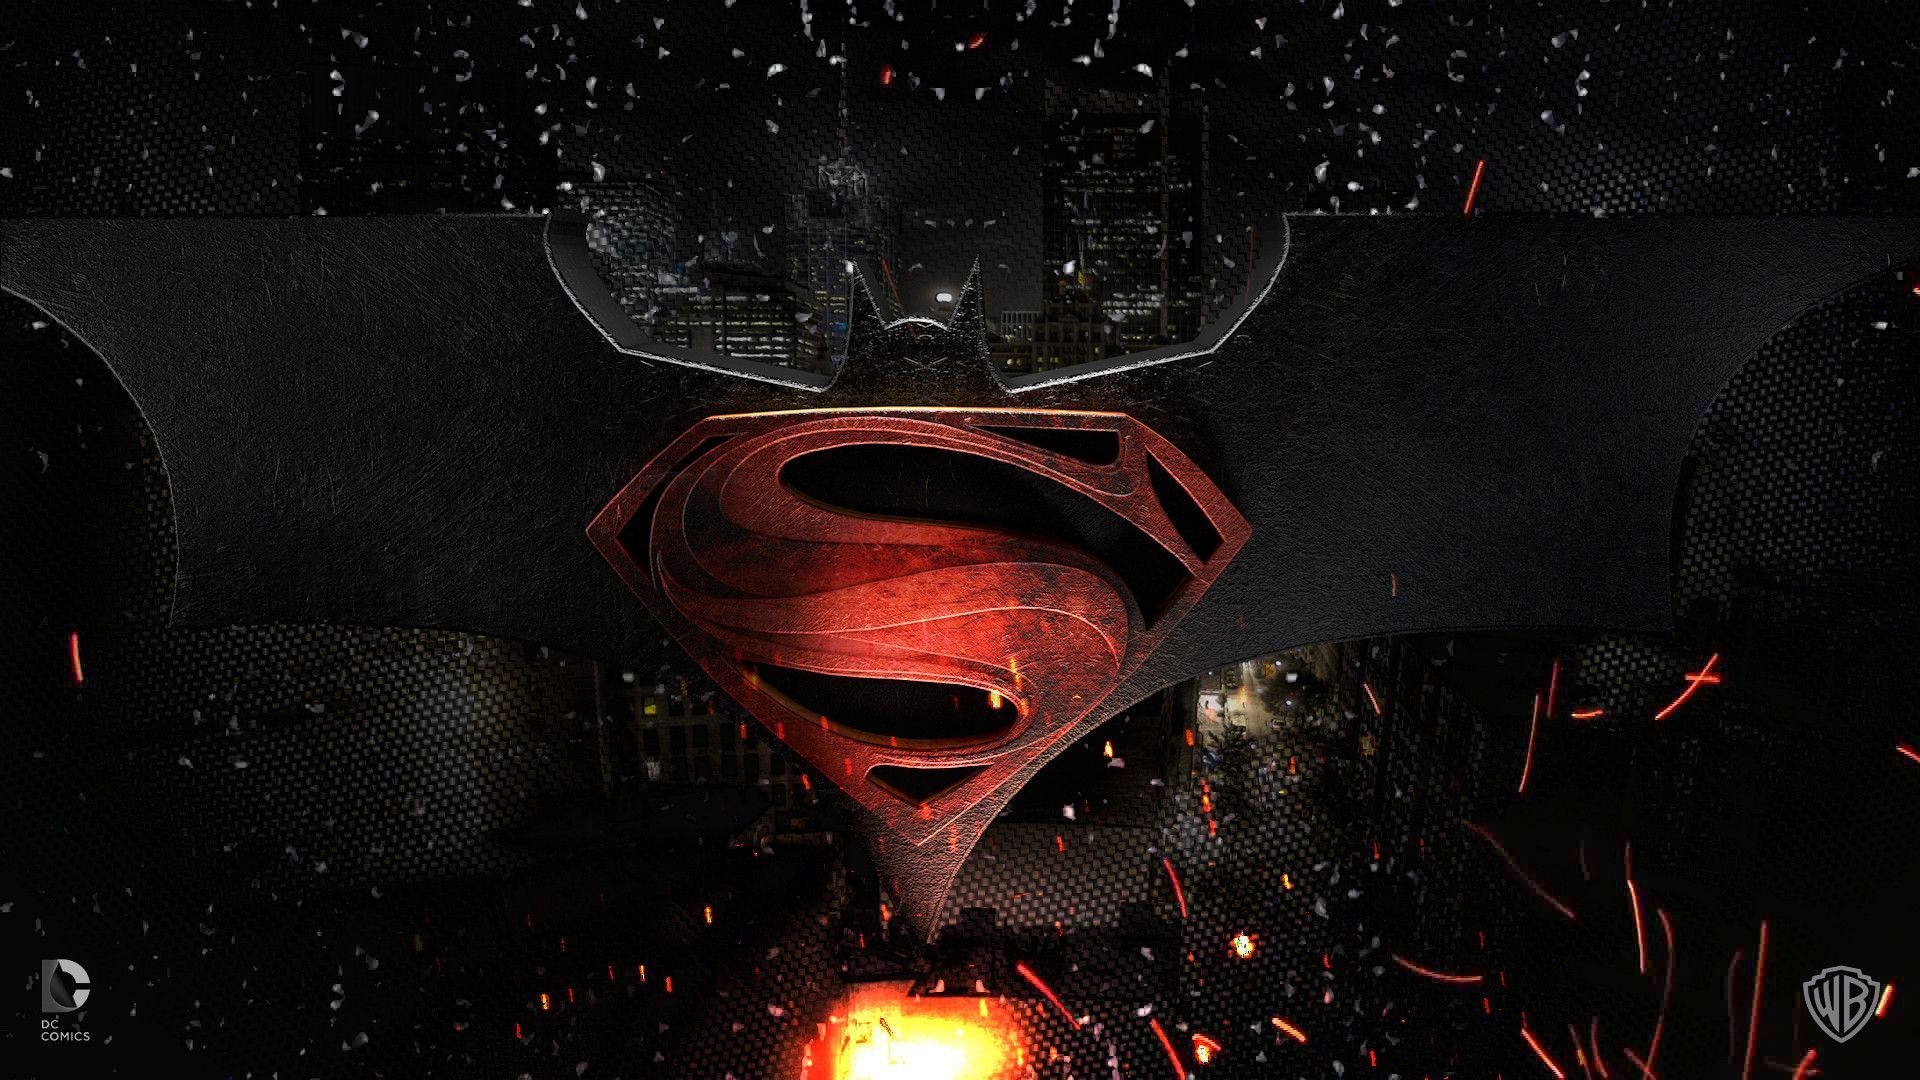 Superman vs batman wallpapers | danaspdb.top